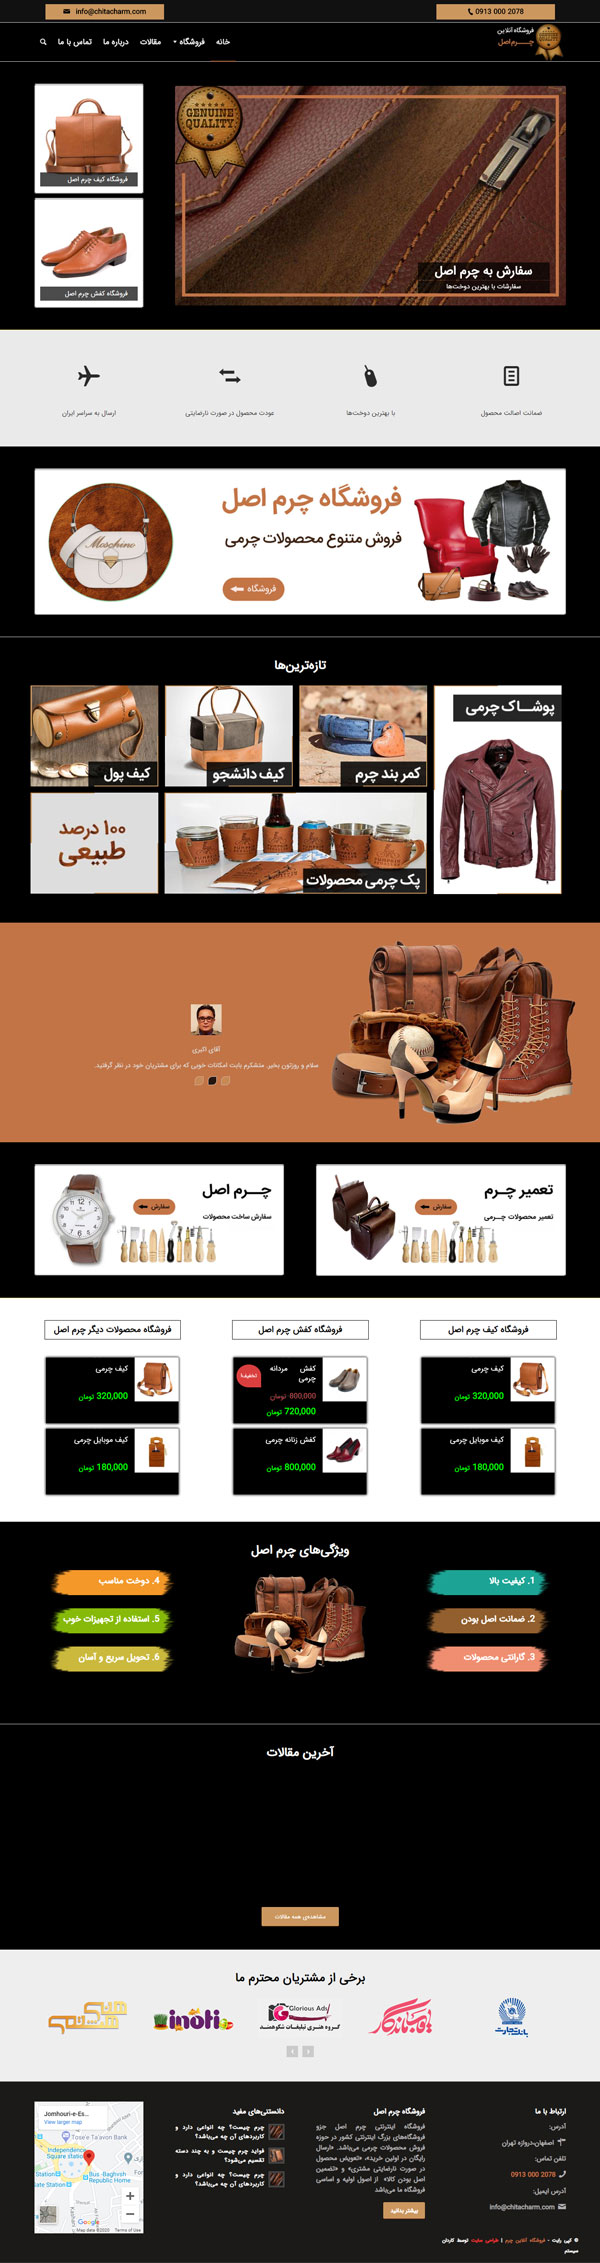 طراحی سایت چیتا چرم | فروشگاه محصولات چرم